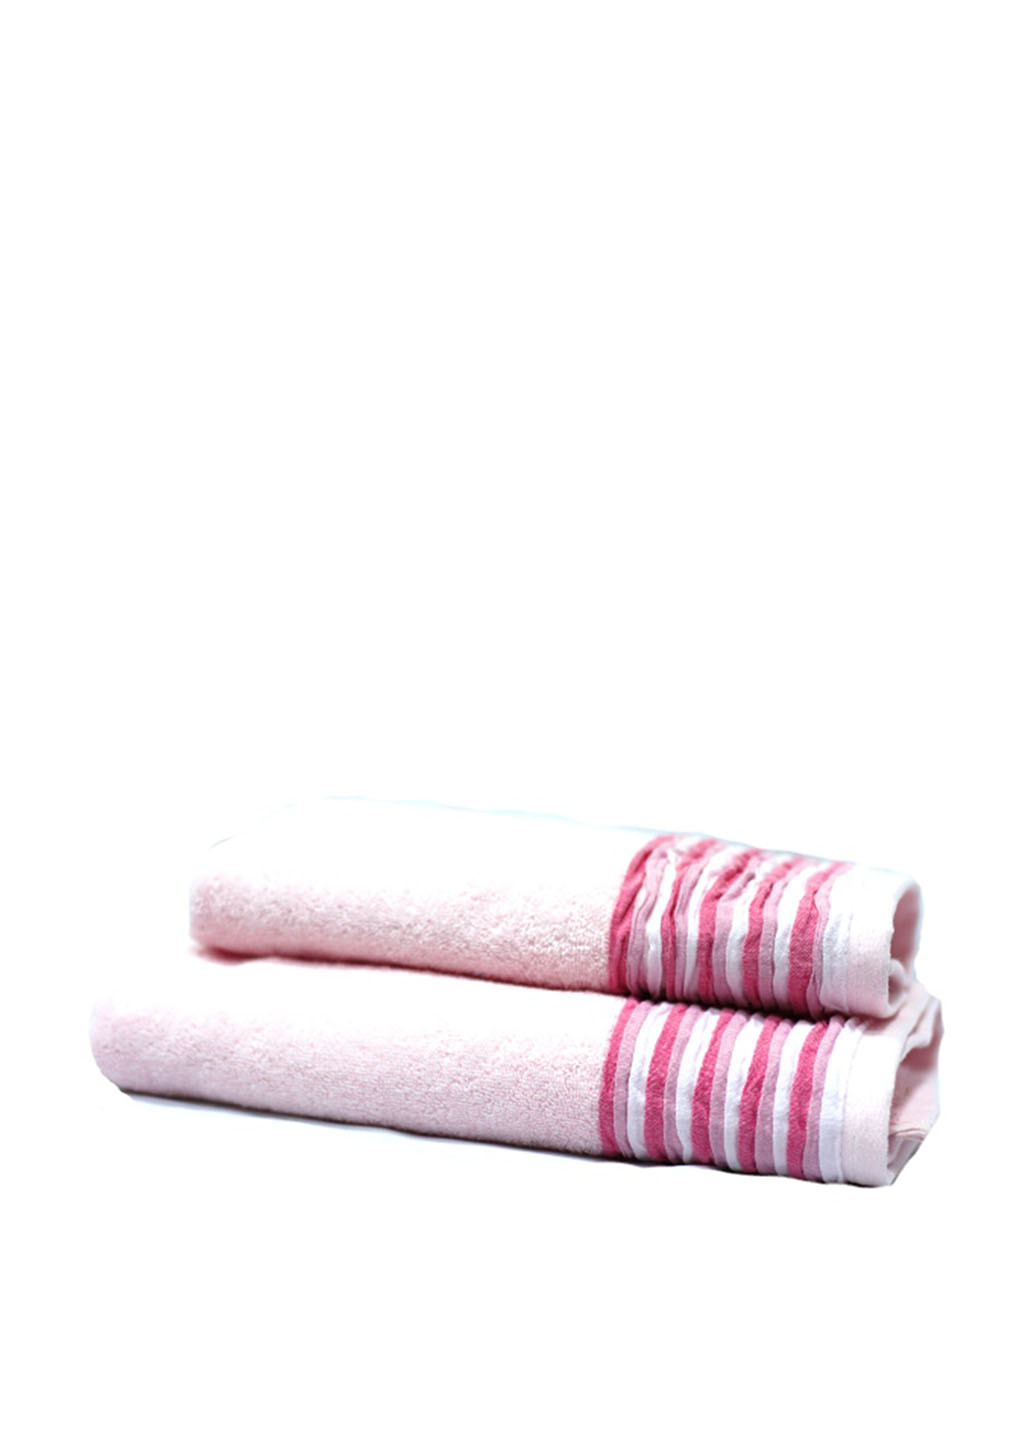 Shamrock полотенце, 70х140 см полоска розовый производство - Китай